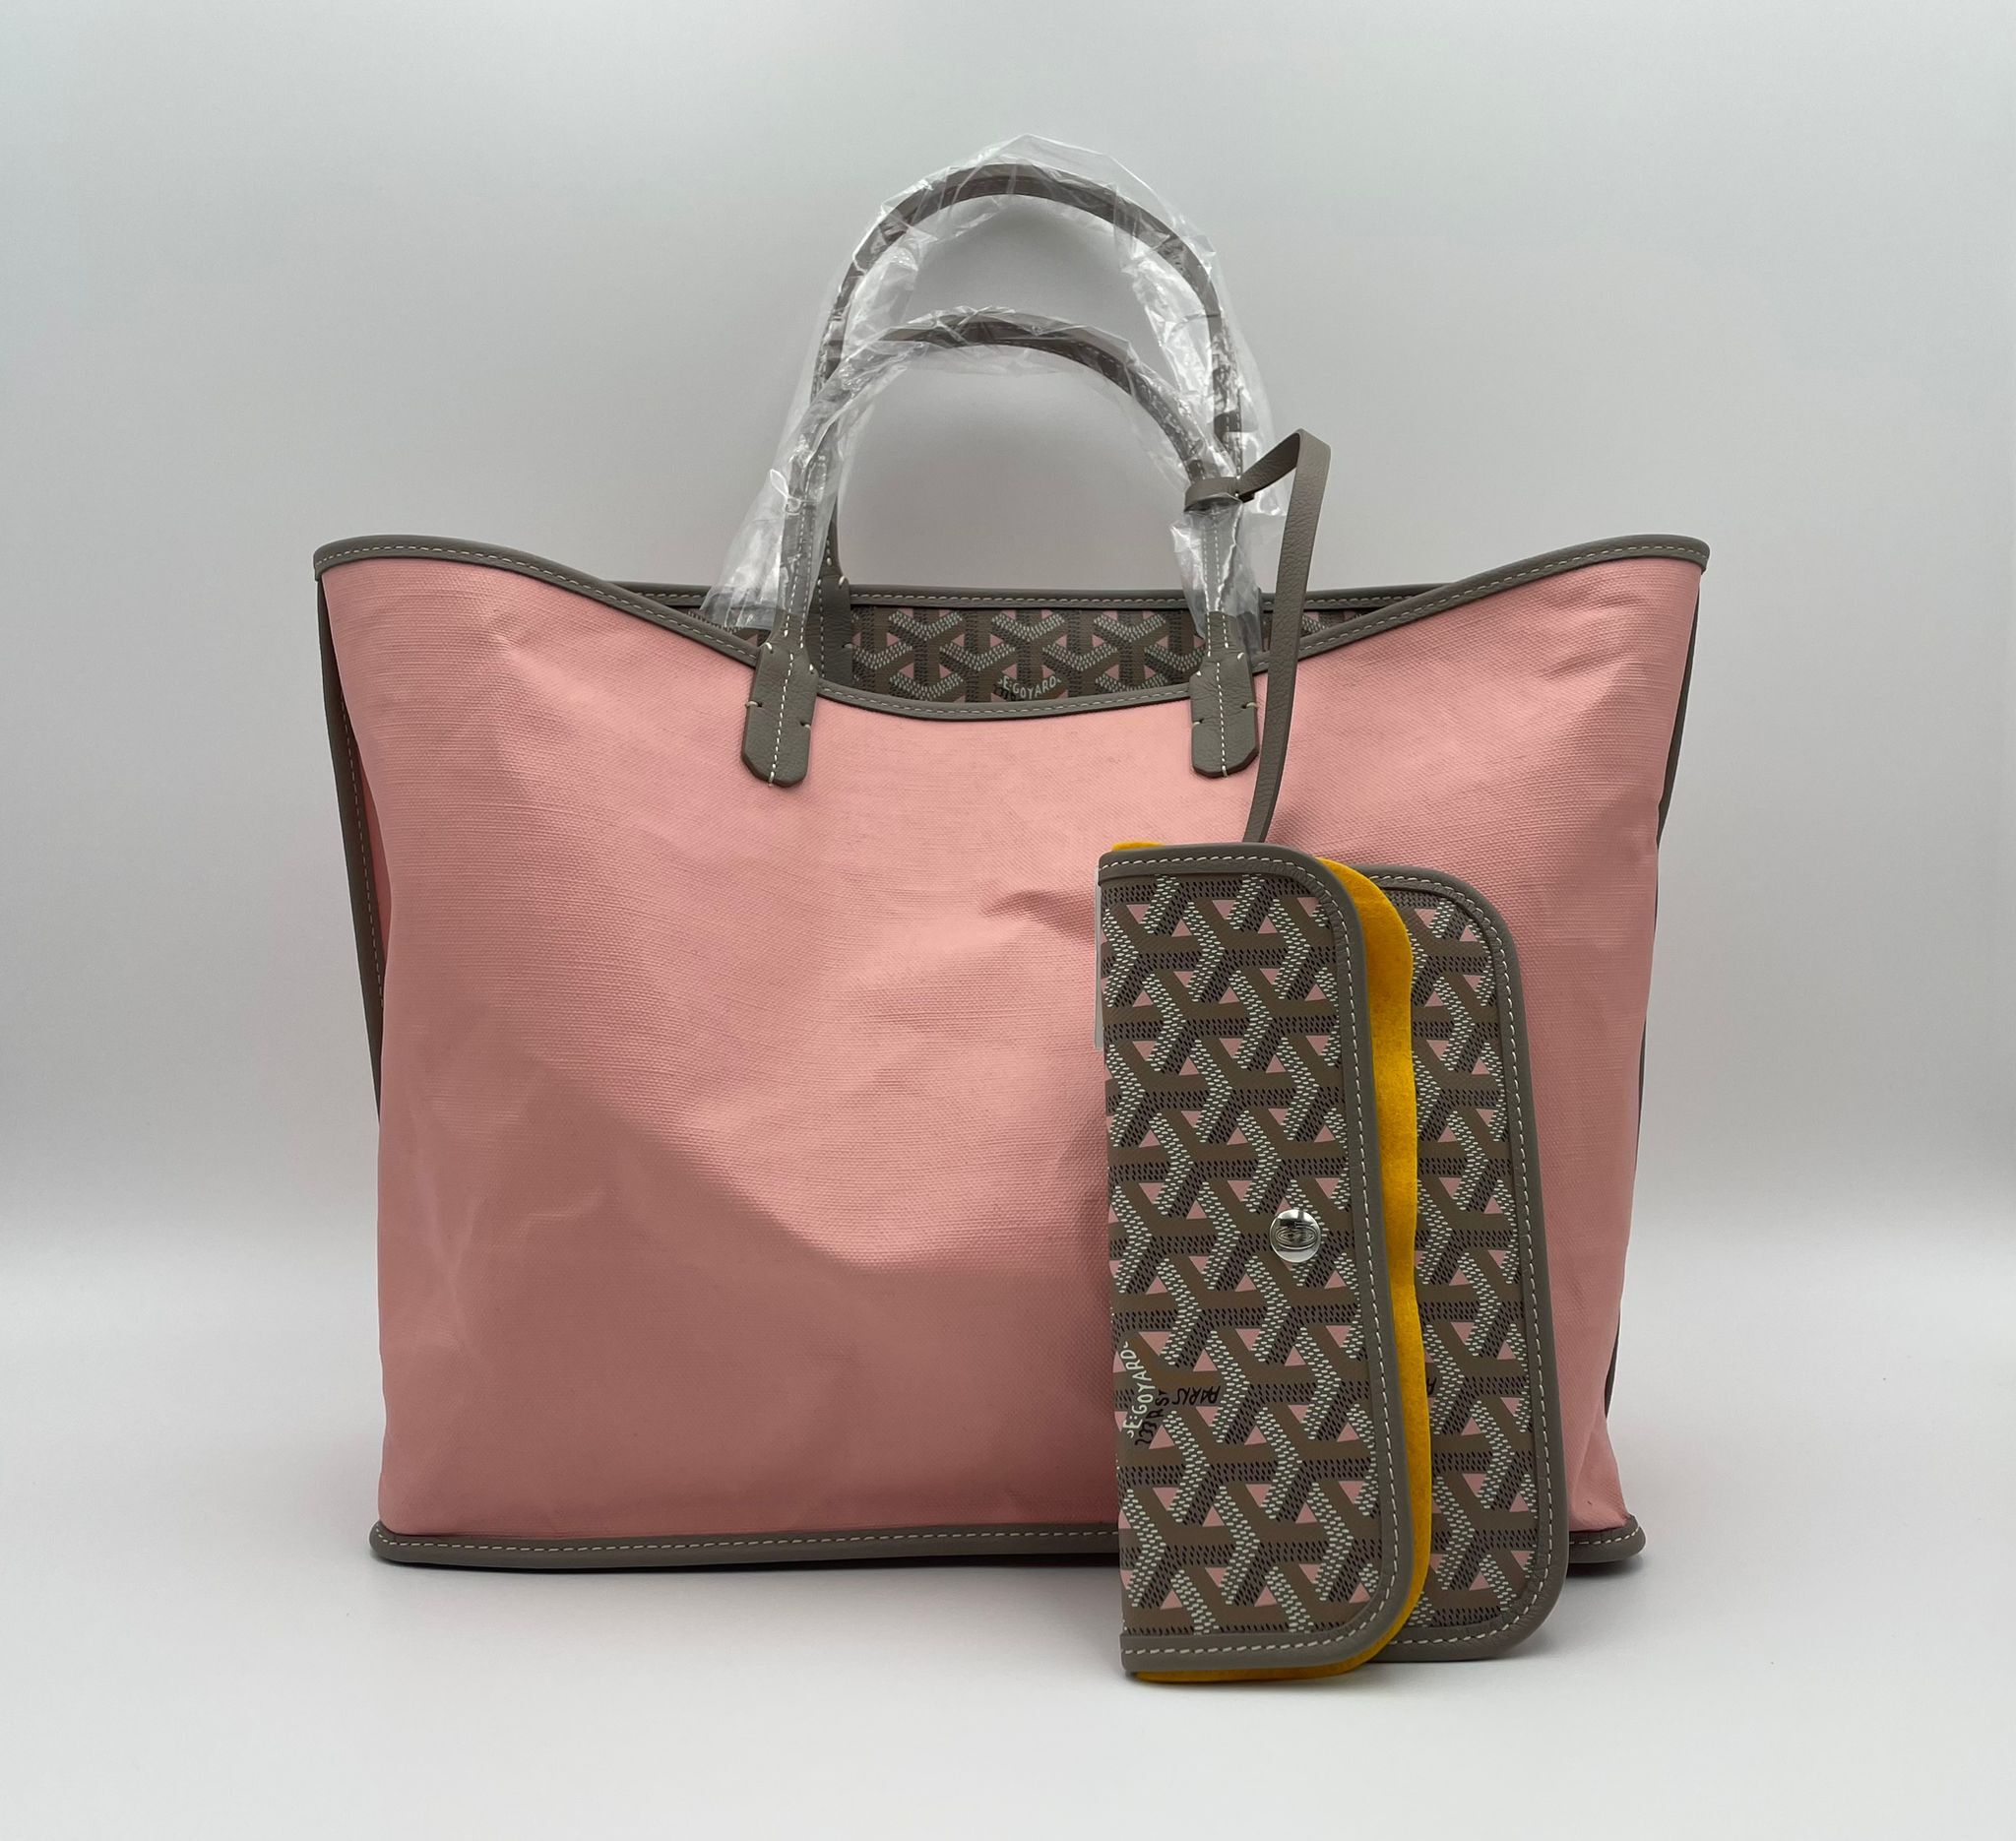 katjafolkblom in 2023  Goyard bag, Cute bags, Bags aesthetic